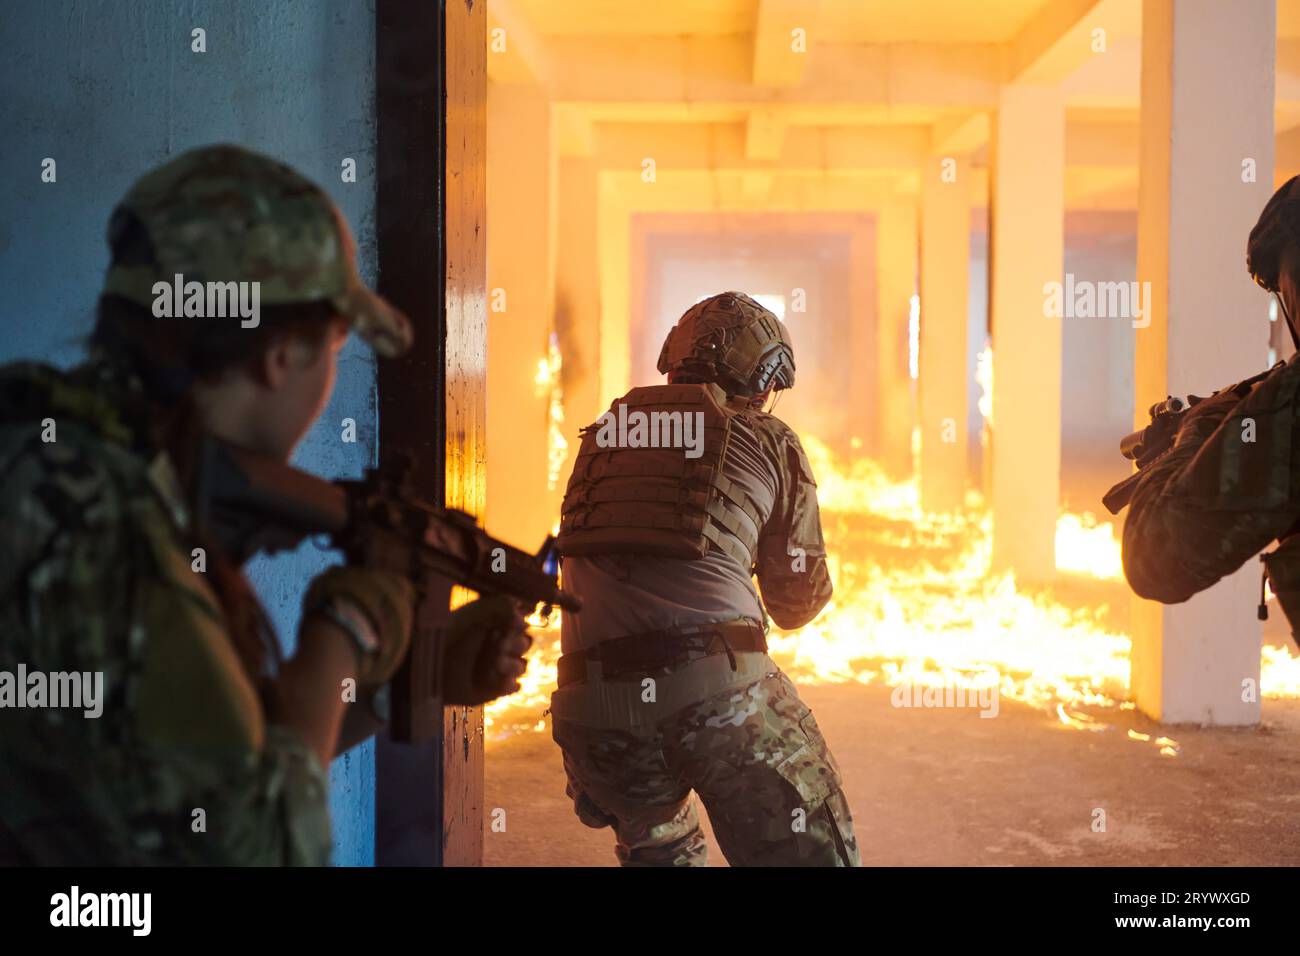 Un groupe de soldats professionnels exécute courageusement une mission de sauvetage dangereuse, entouré par le feu dans un bâtiment périlleux. Banque D'Images